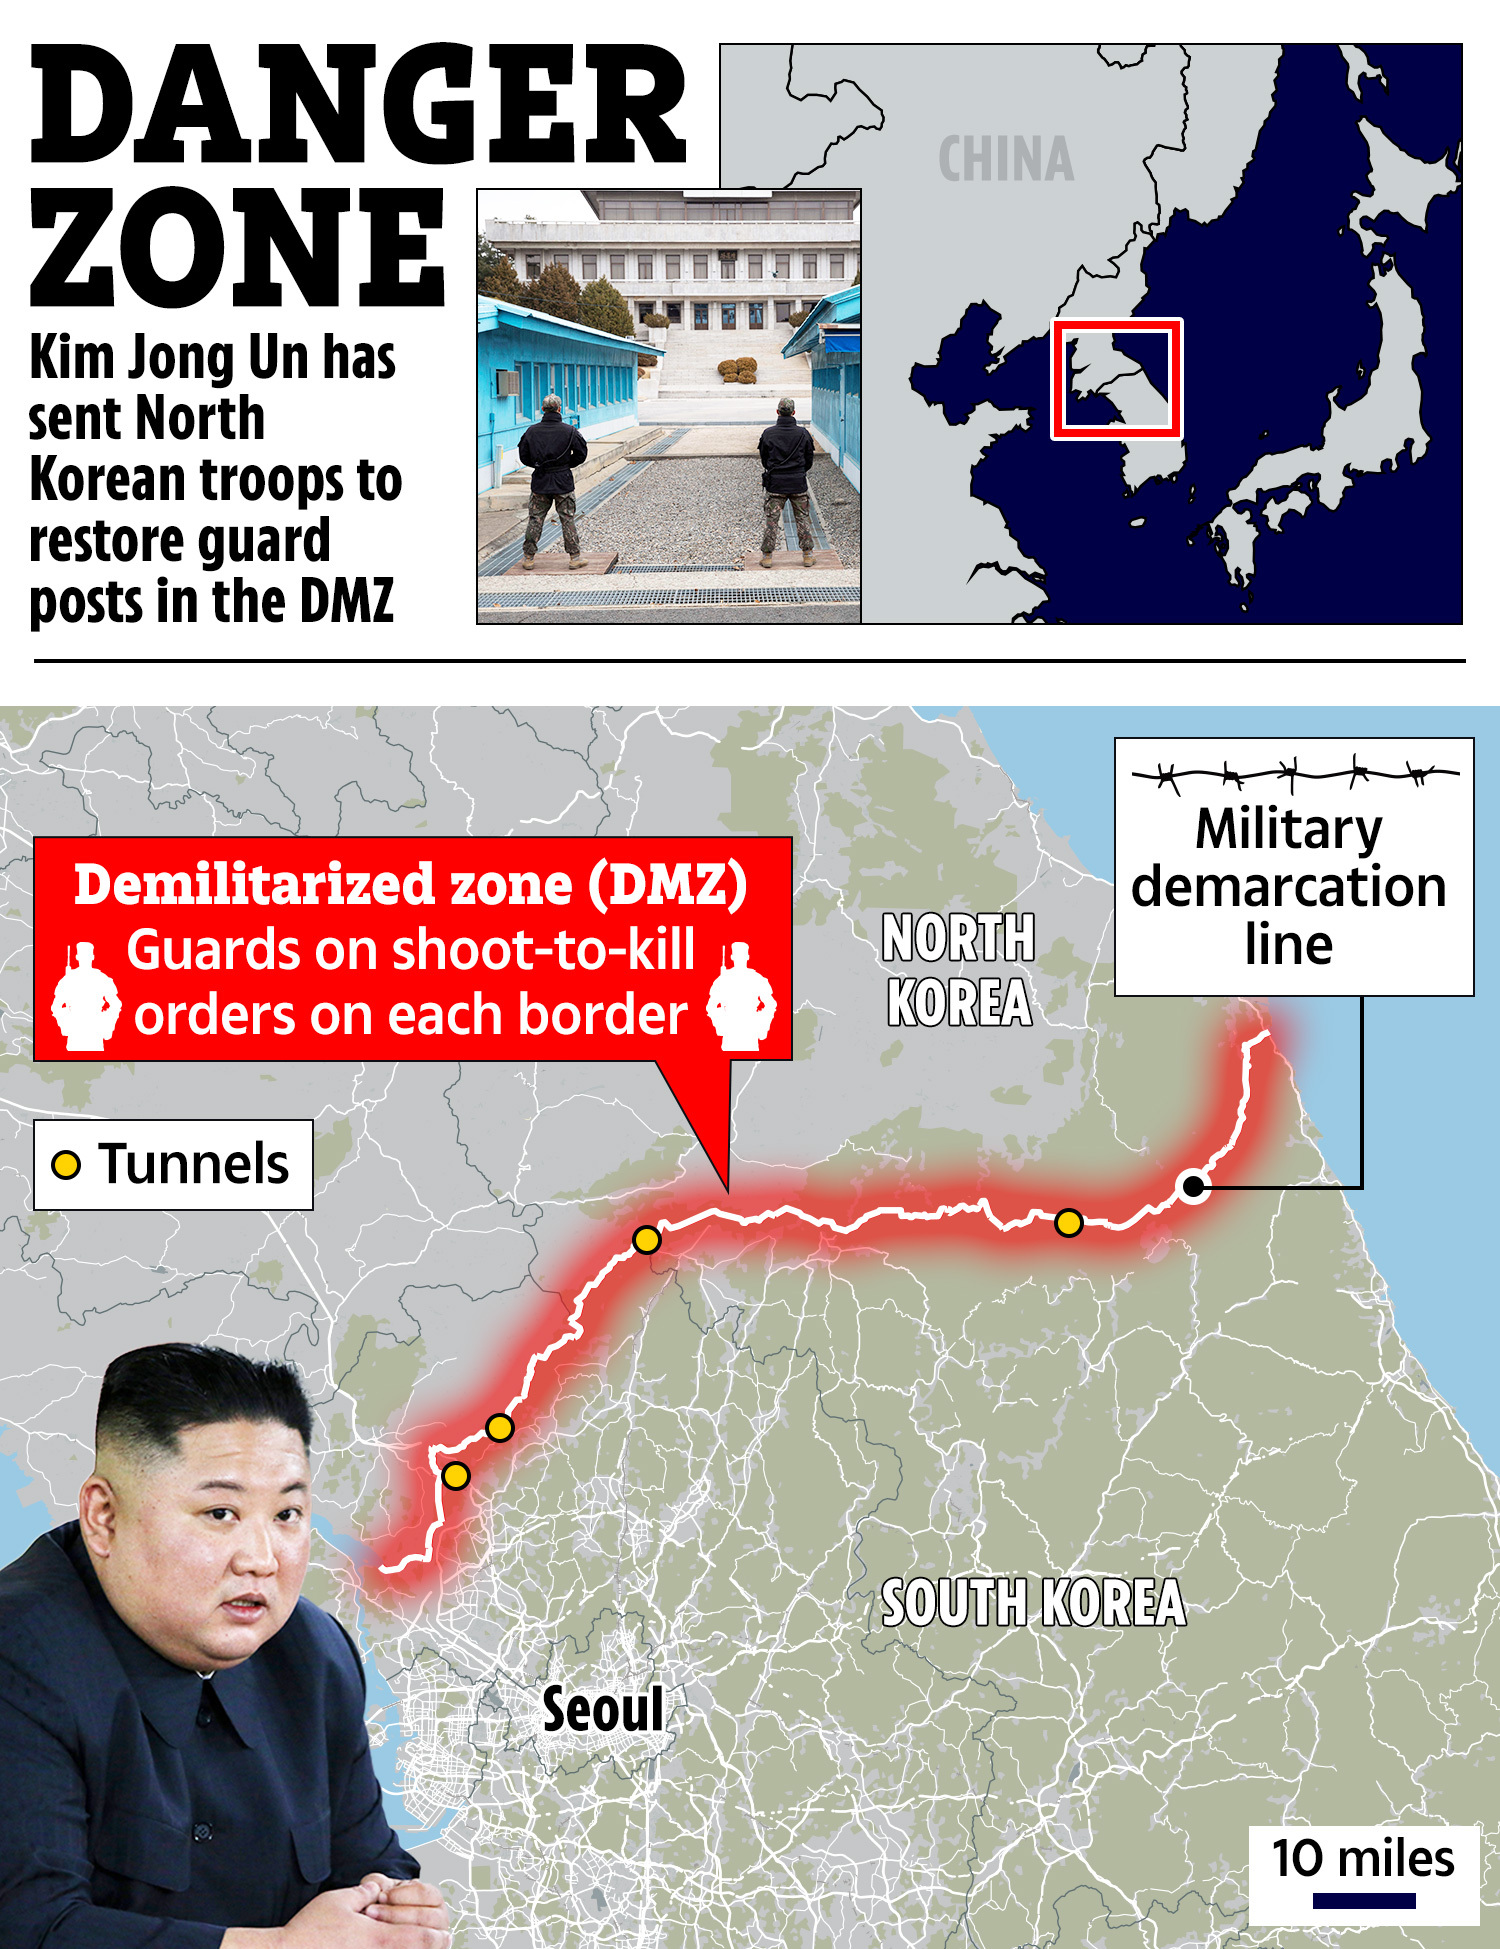 Kim Jong Un hat Truppen entsandt, um die 11 2018 in der DMZ abgerissenen Wachposten wieder aufzubauen